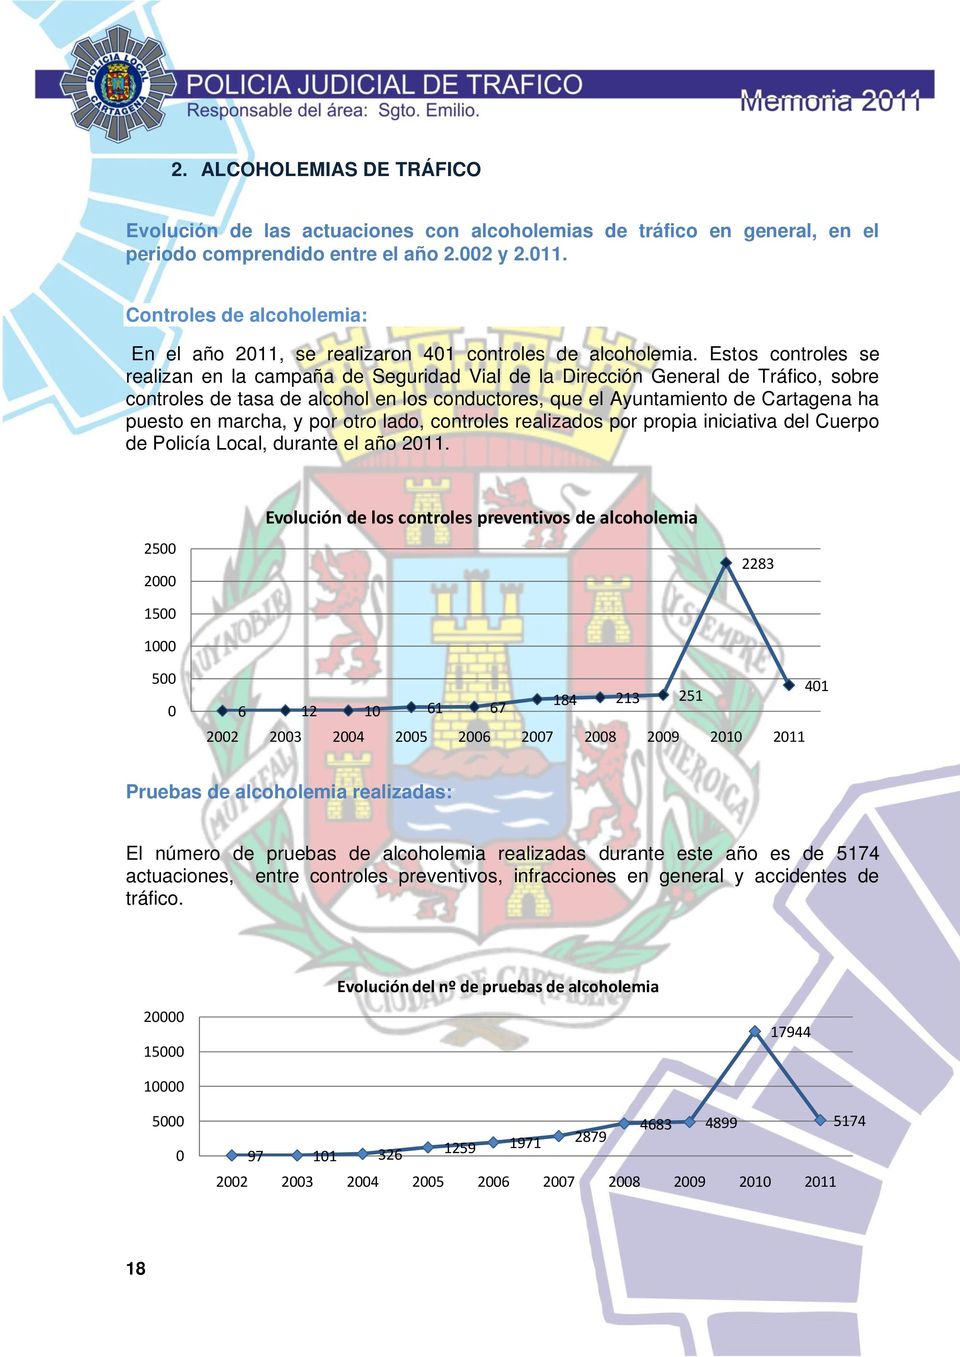 Estos controles se realizan en la campaña de Seguridad Vial de la Dirección General de Tráfico, sobre controles de tasa de alcohol en los conductores, que el Ayuntamiento de Cartagena ha puesto en